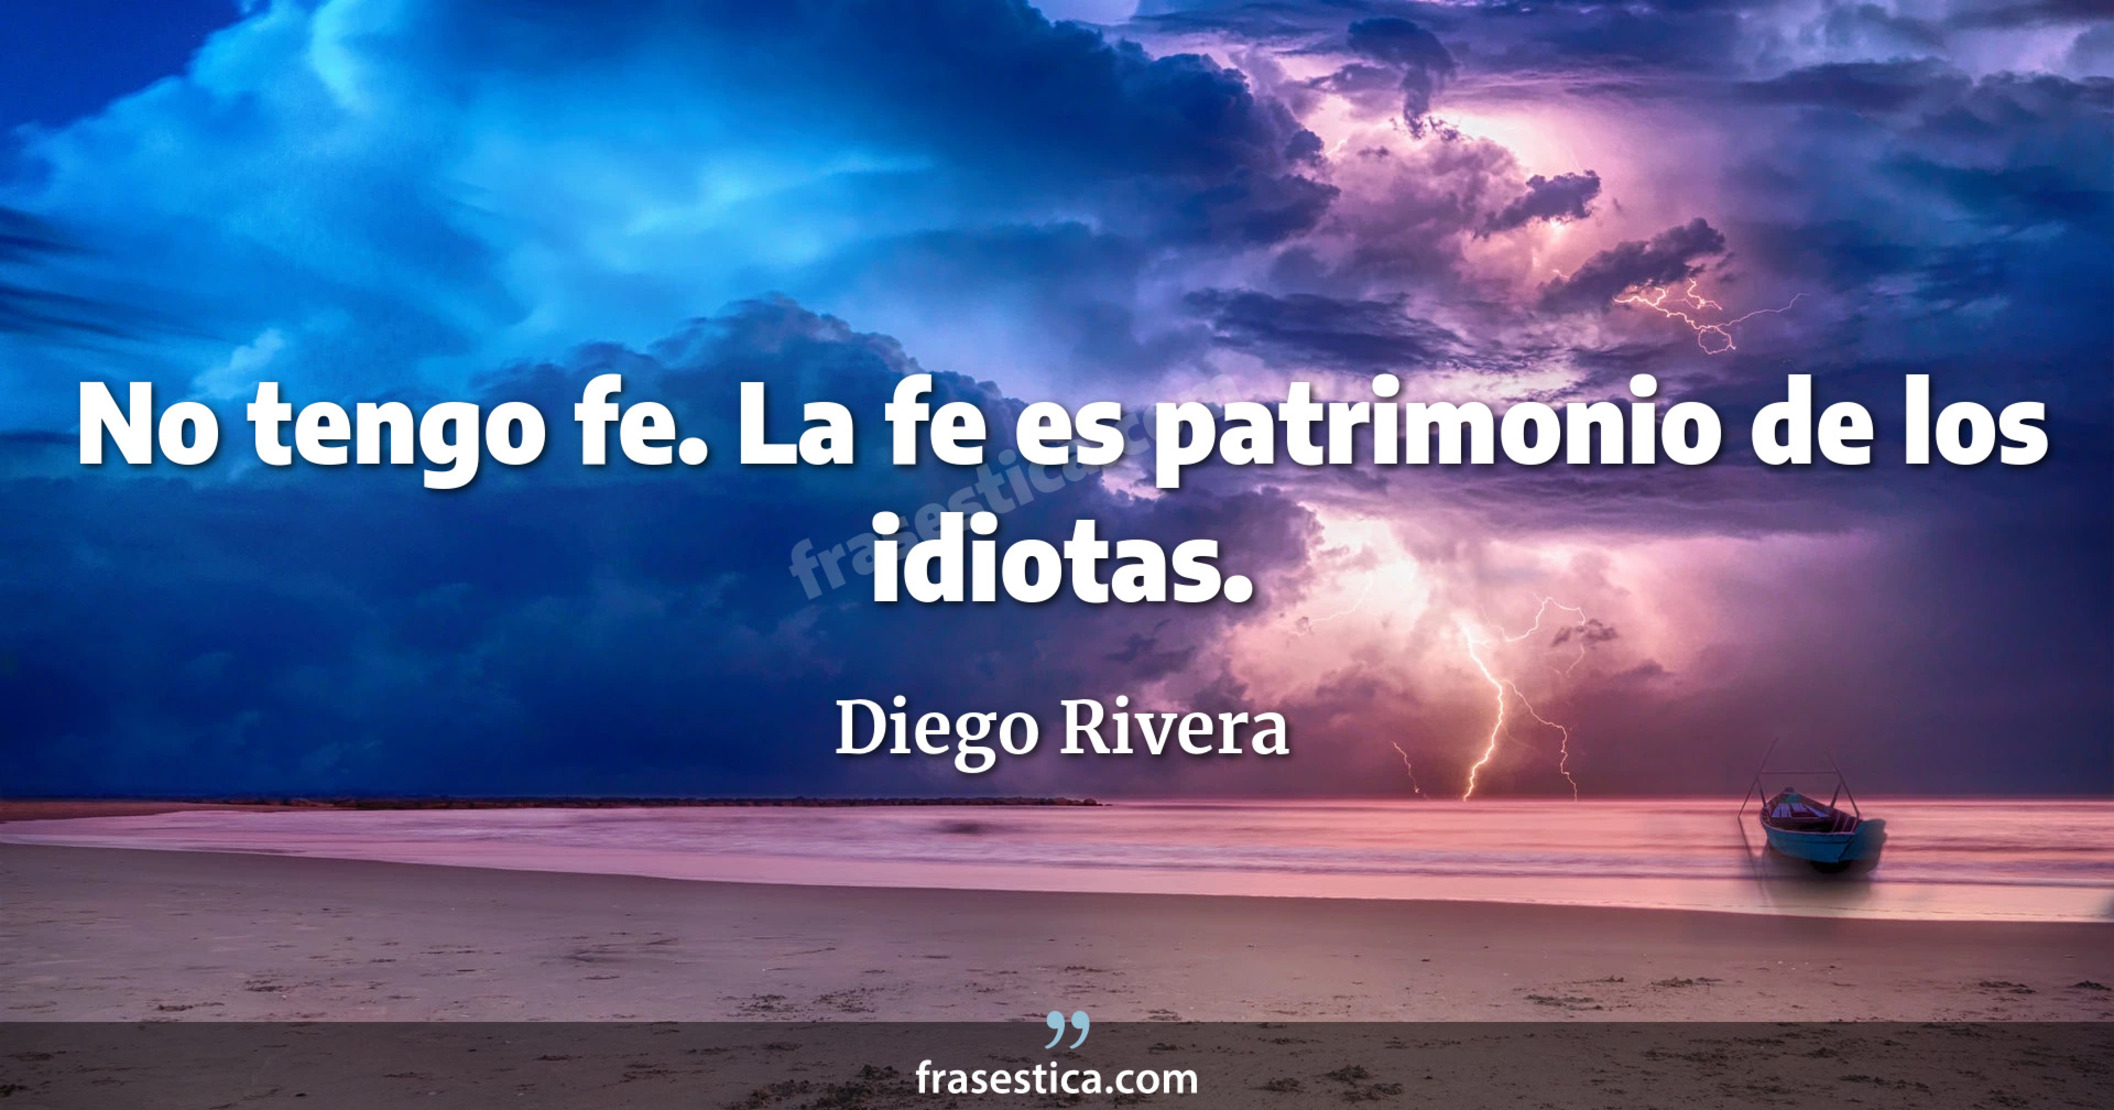 No tengo fe. La fe es patrimonio de los idiotas. - Diego Rivera